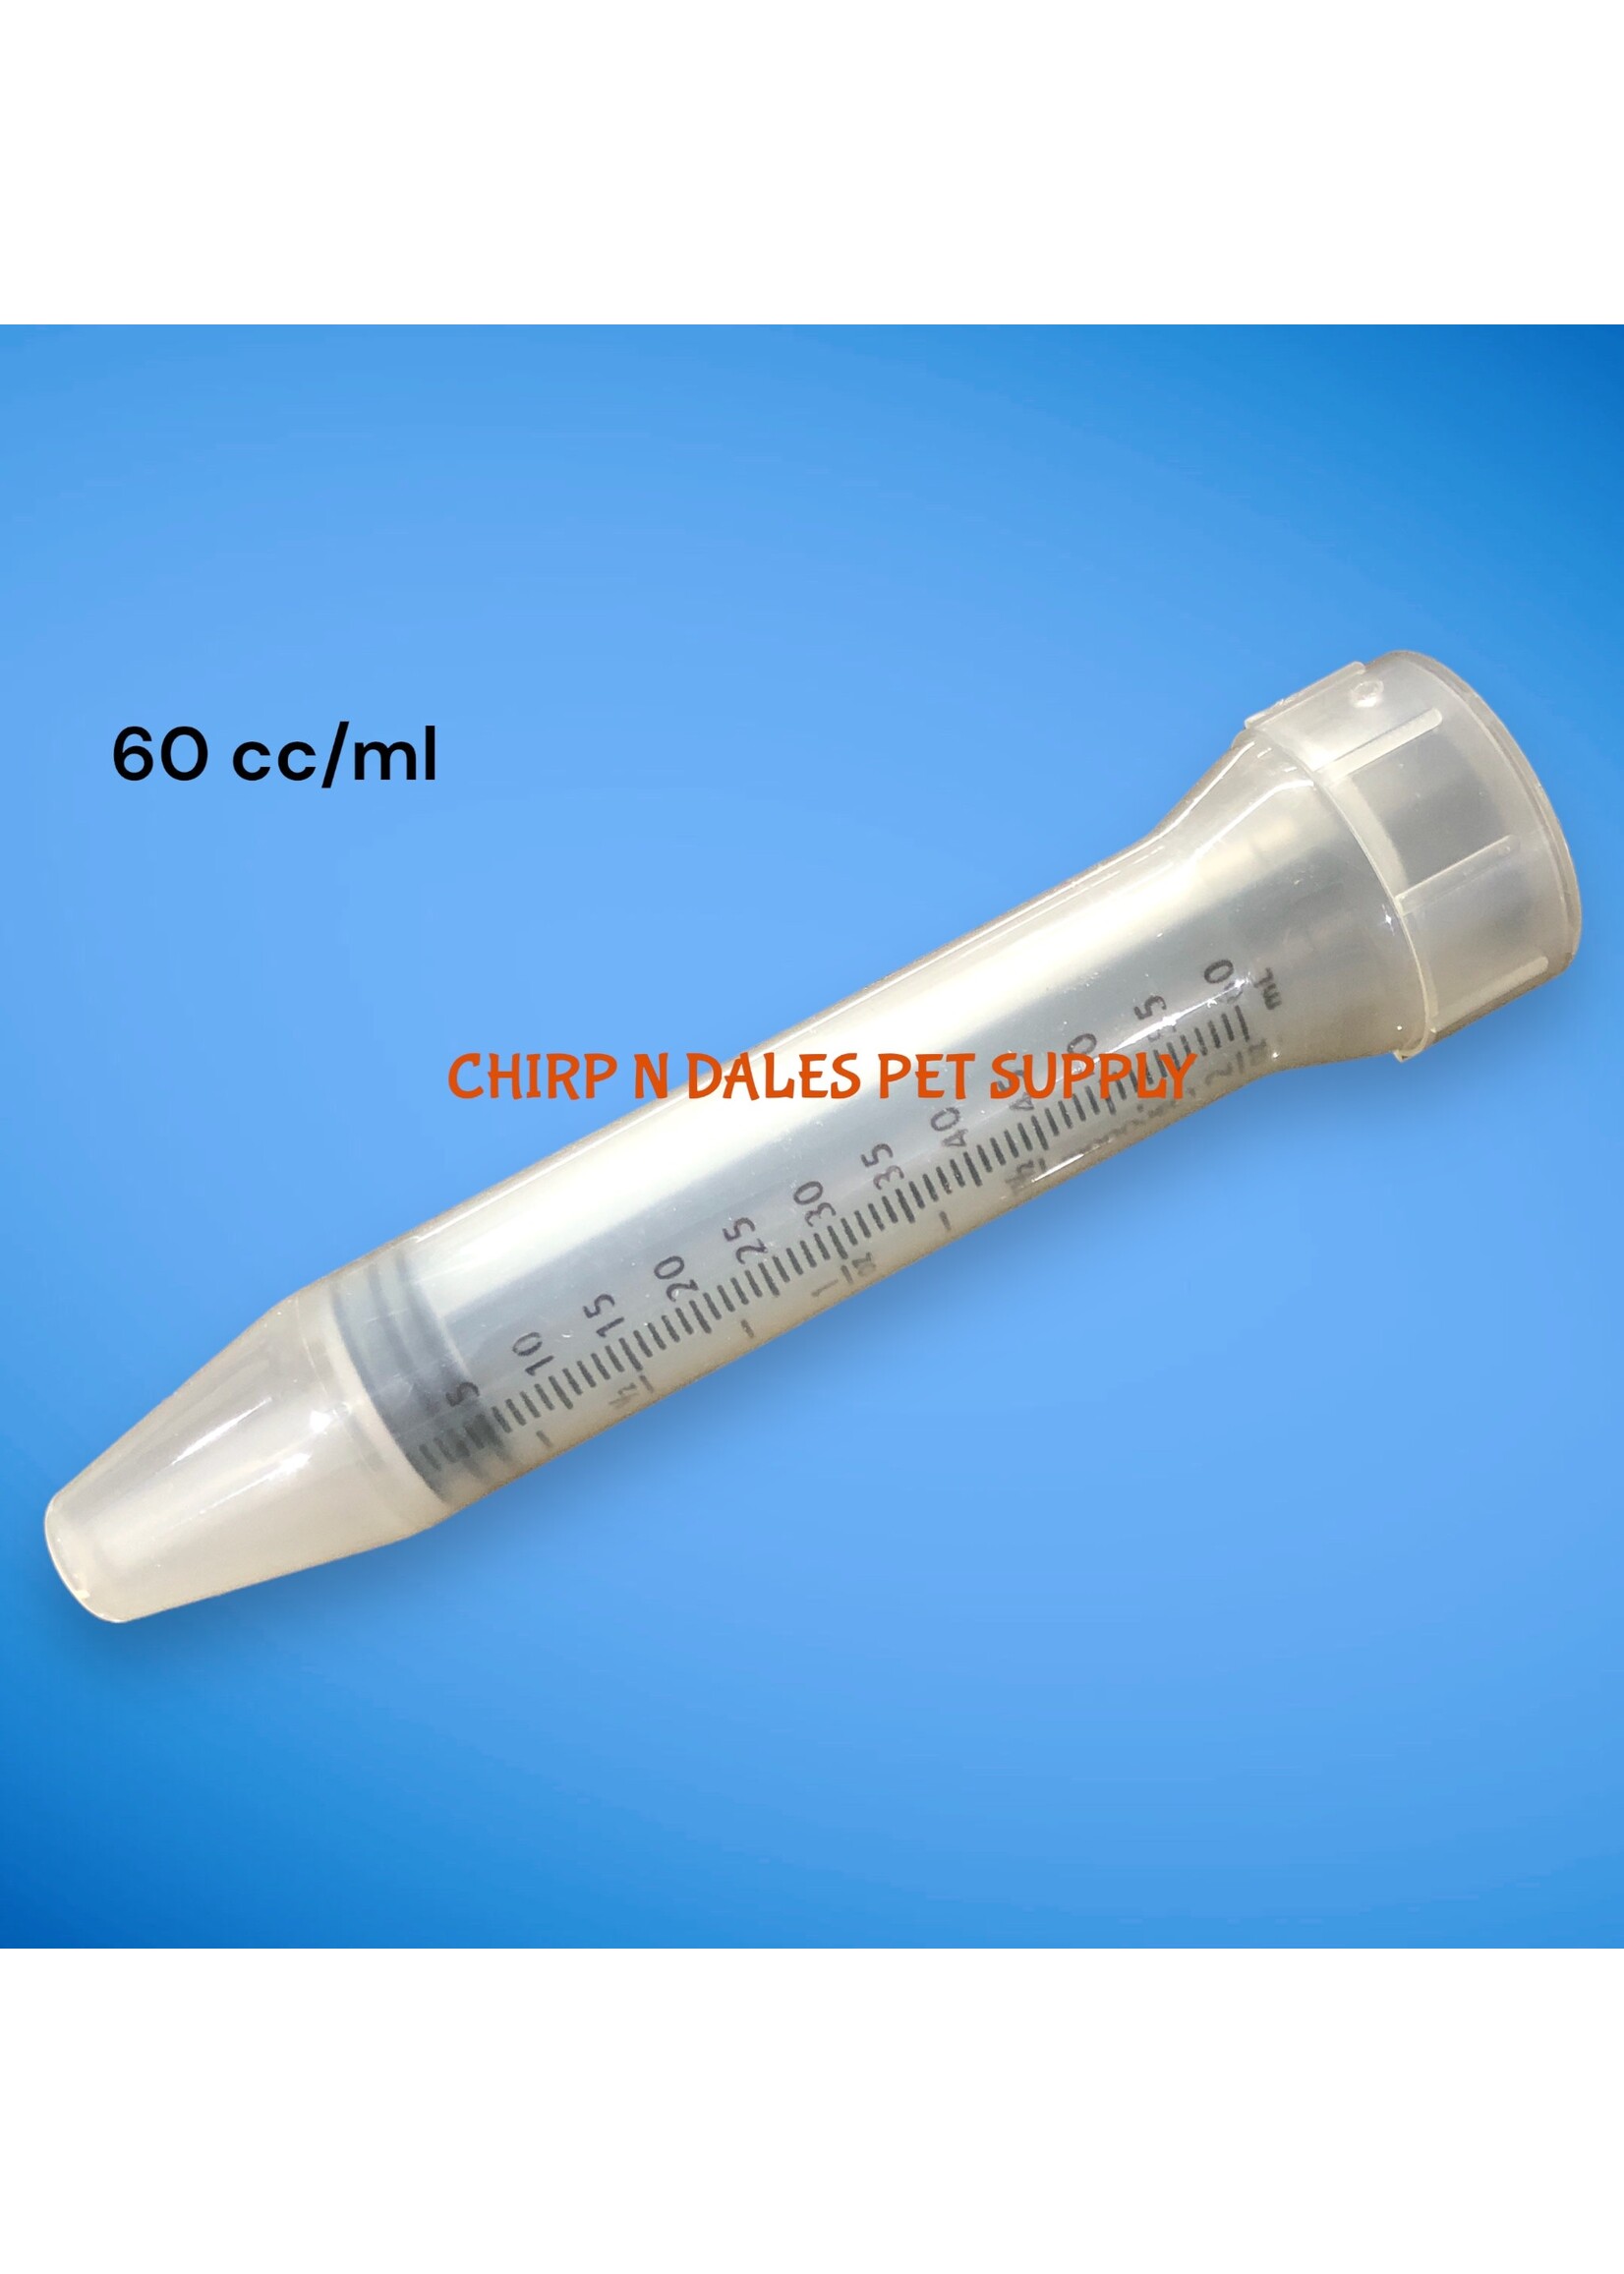 Syringe 60 cc/ml (1 Unit)